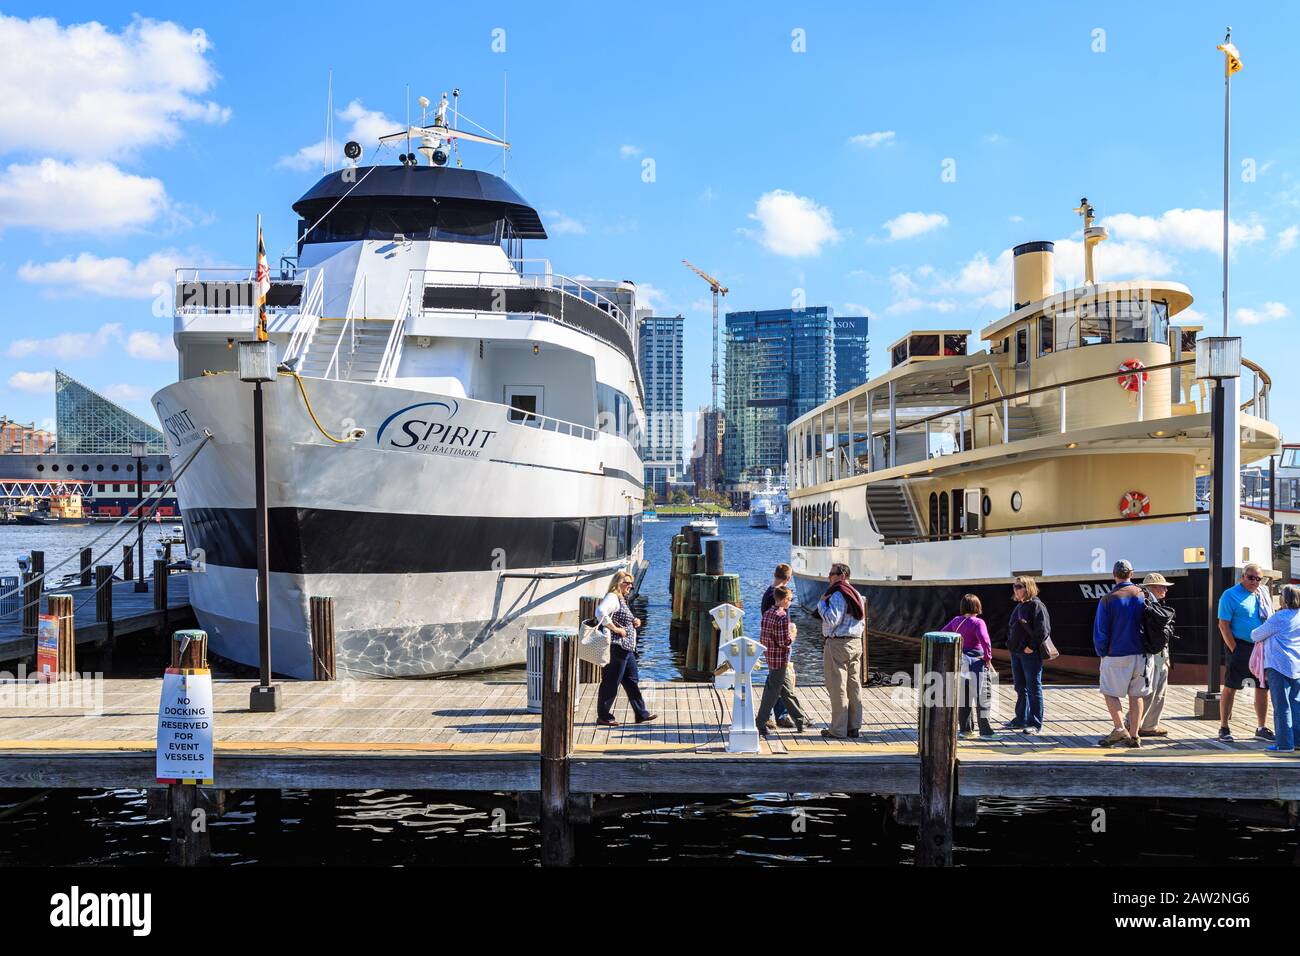 Baltimora, MD/US - 15 ottobre 2016: Grandi navi da crociera al molo nel Porto Interno della città, pronte a portare i passeggeri in tour del canale. Foto Stock